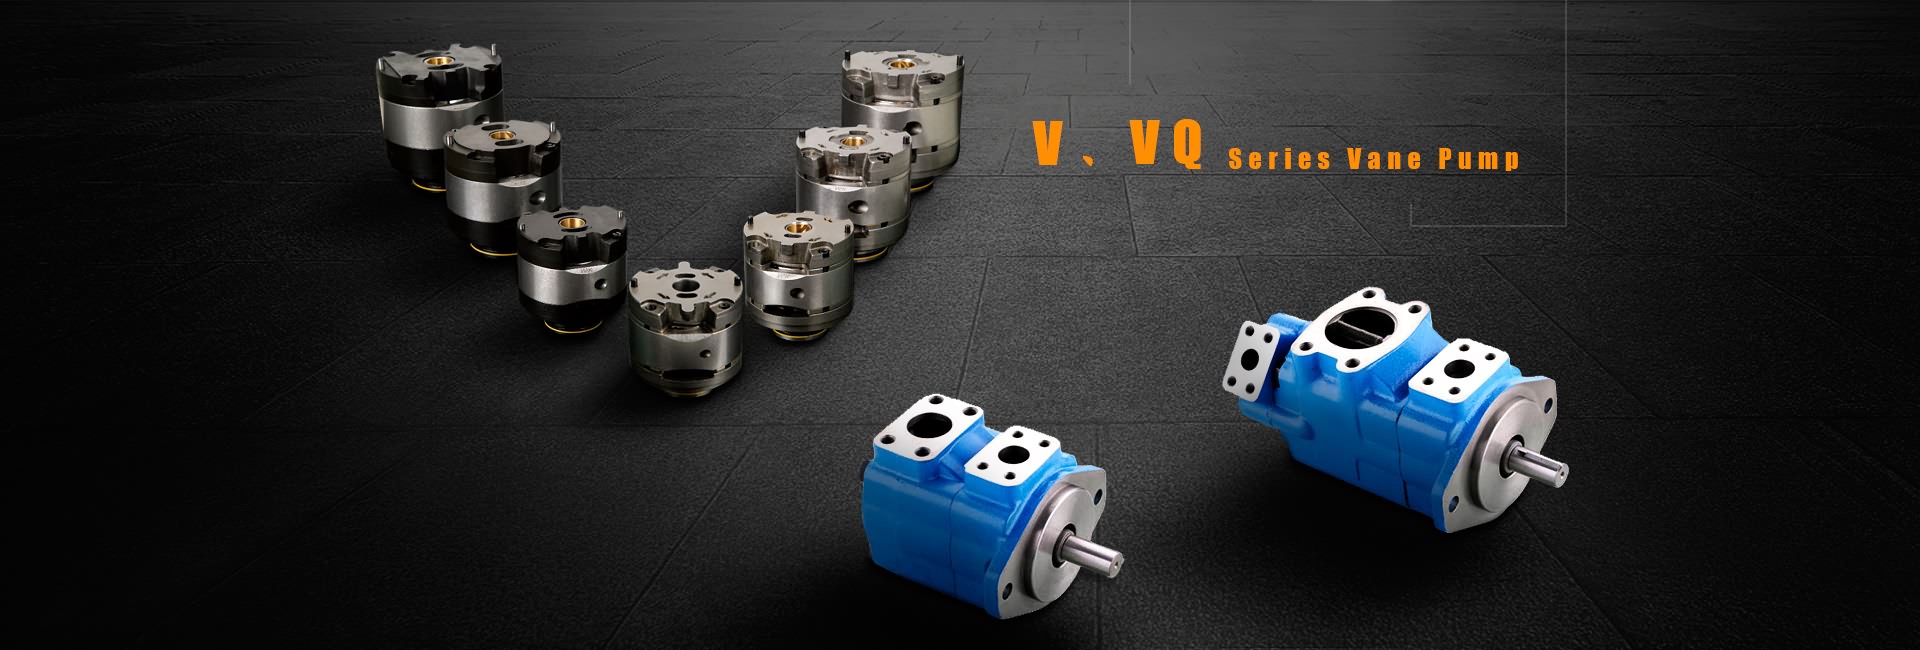 V, VQ Series Vane Pump